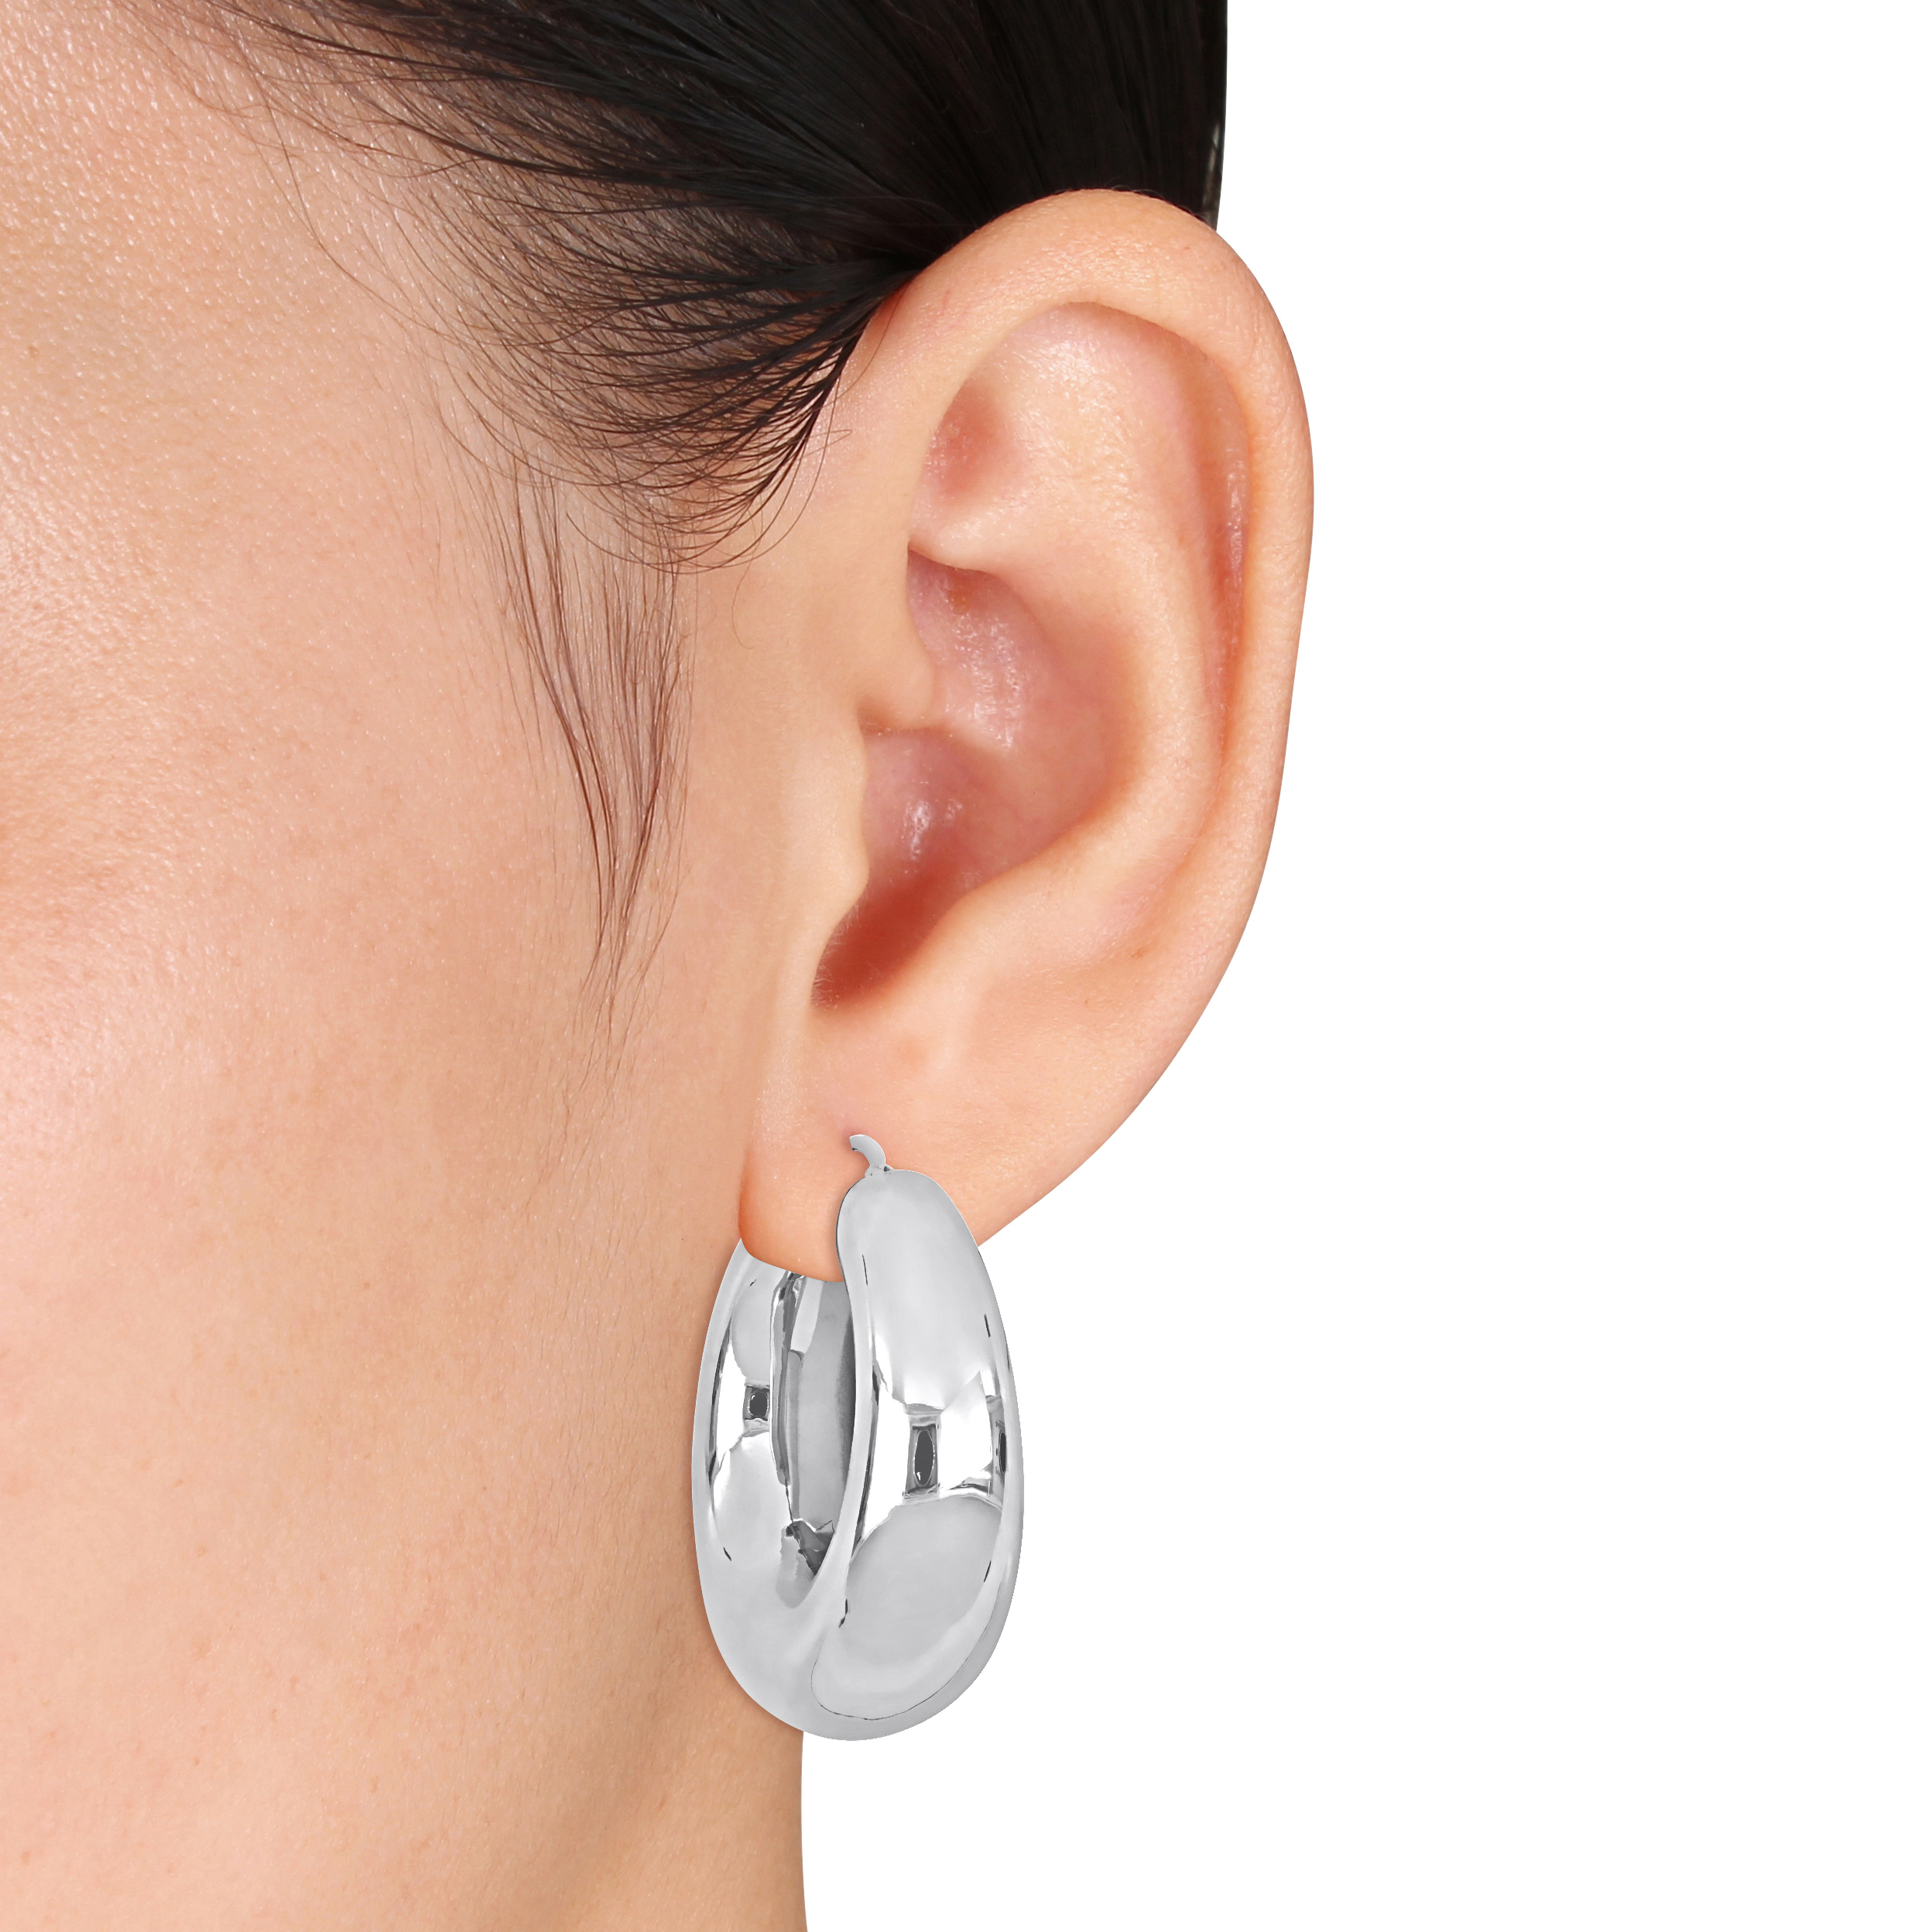 40 MM Polished Hoop Earrings in Sterling Silver